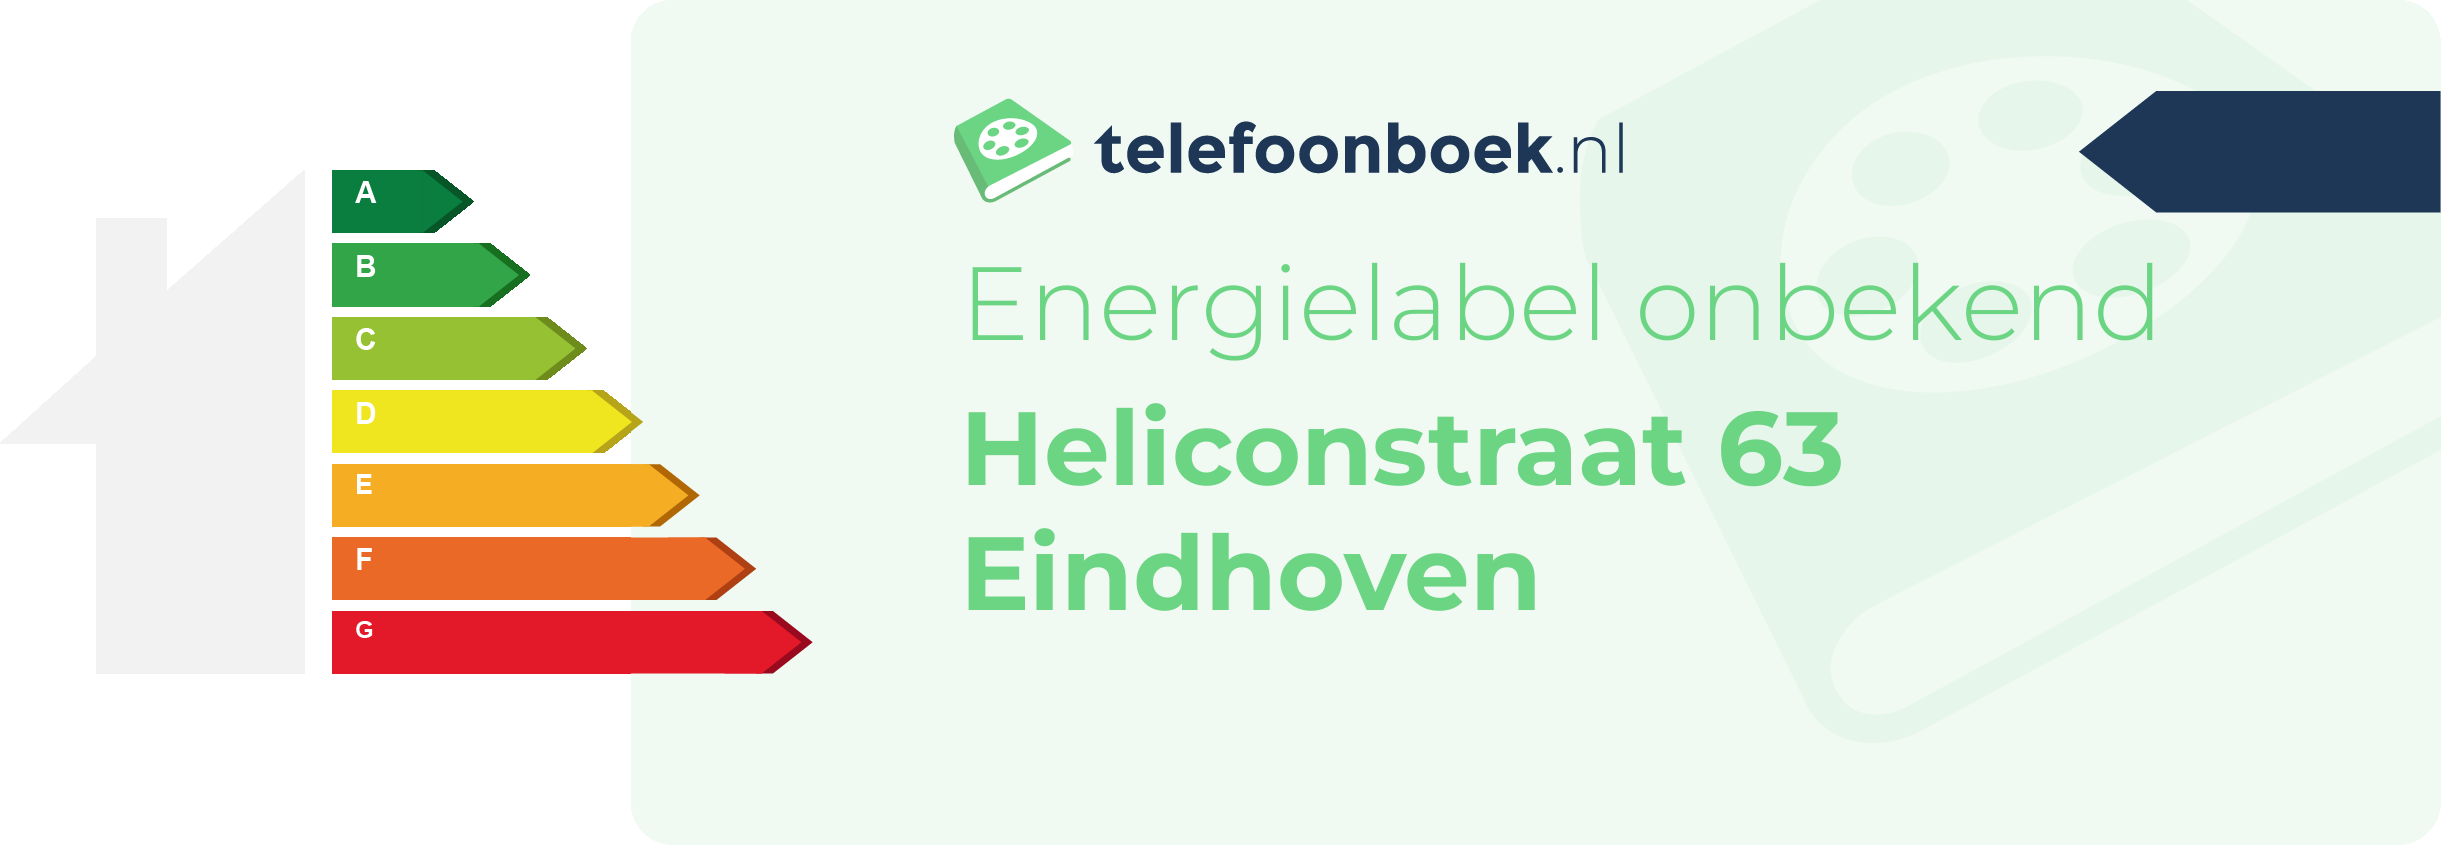 Energielabel Heliconstraat 63 Eindhoven